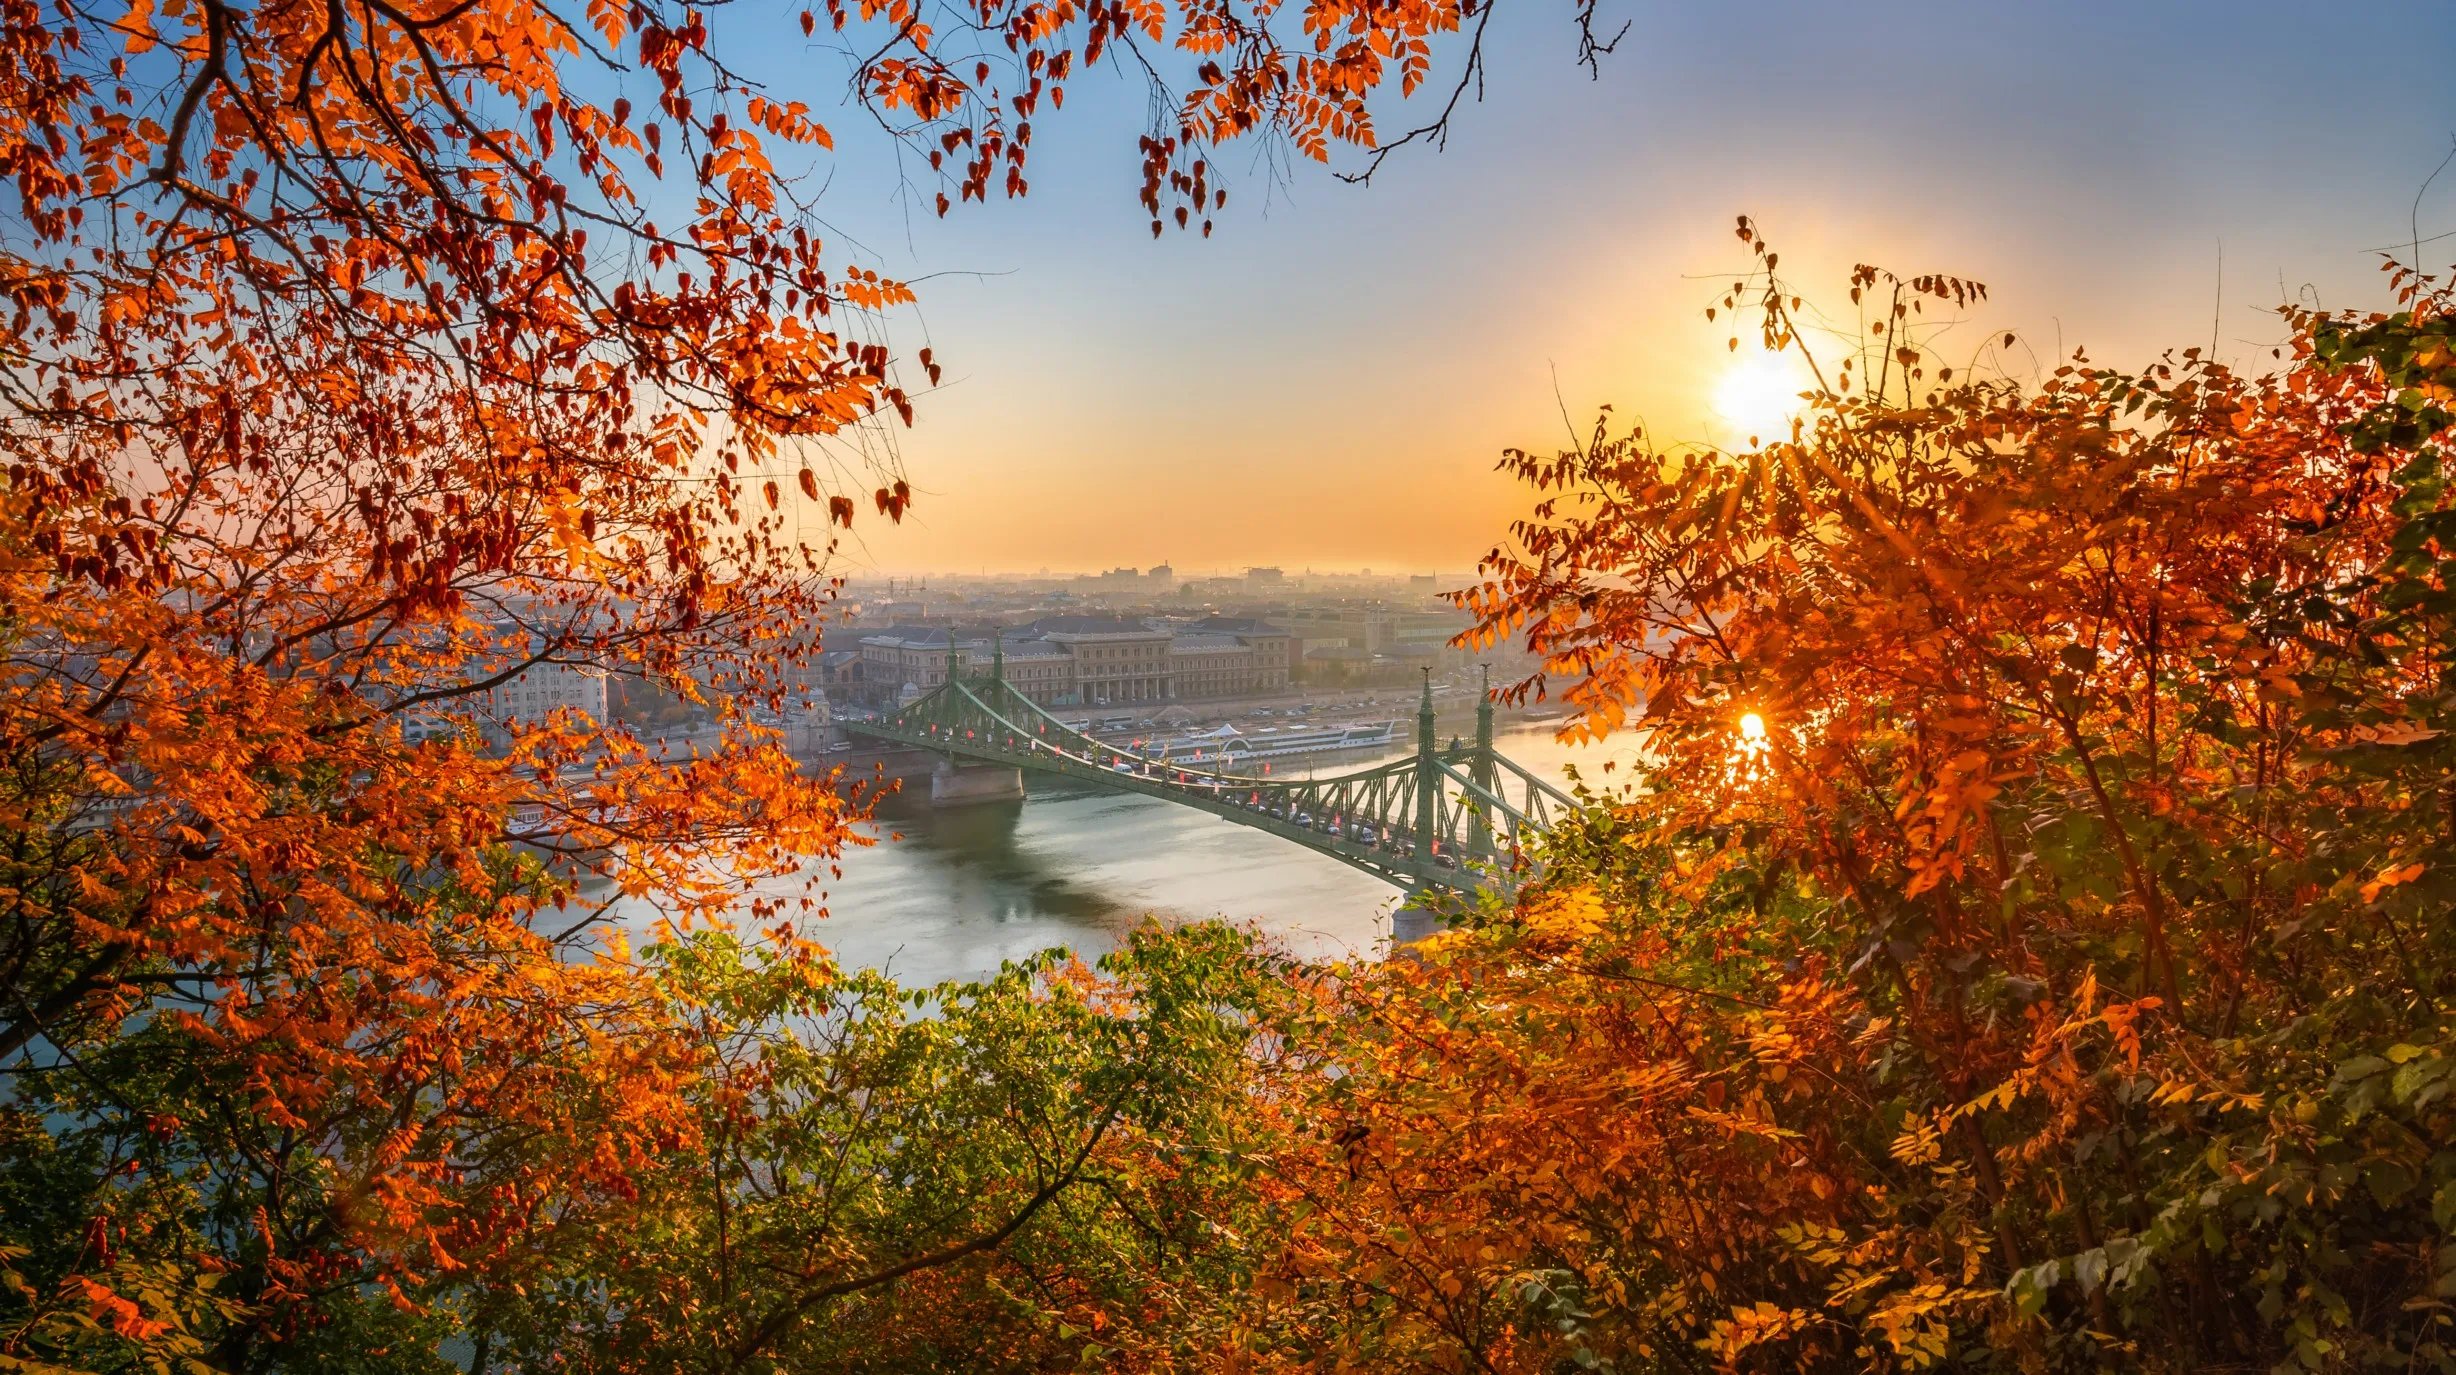 Hongarije - Boedapest herfst